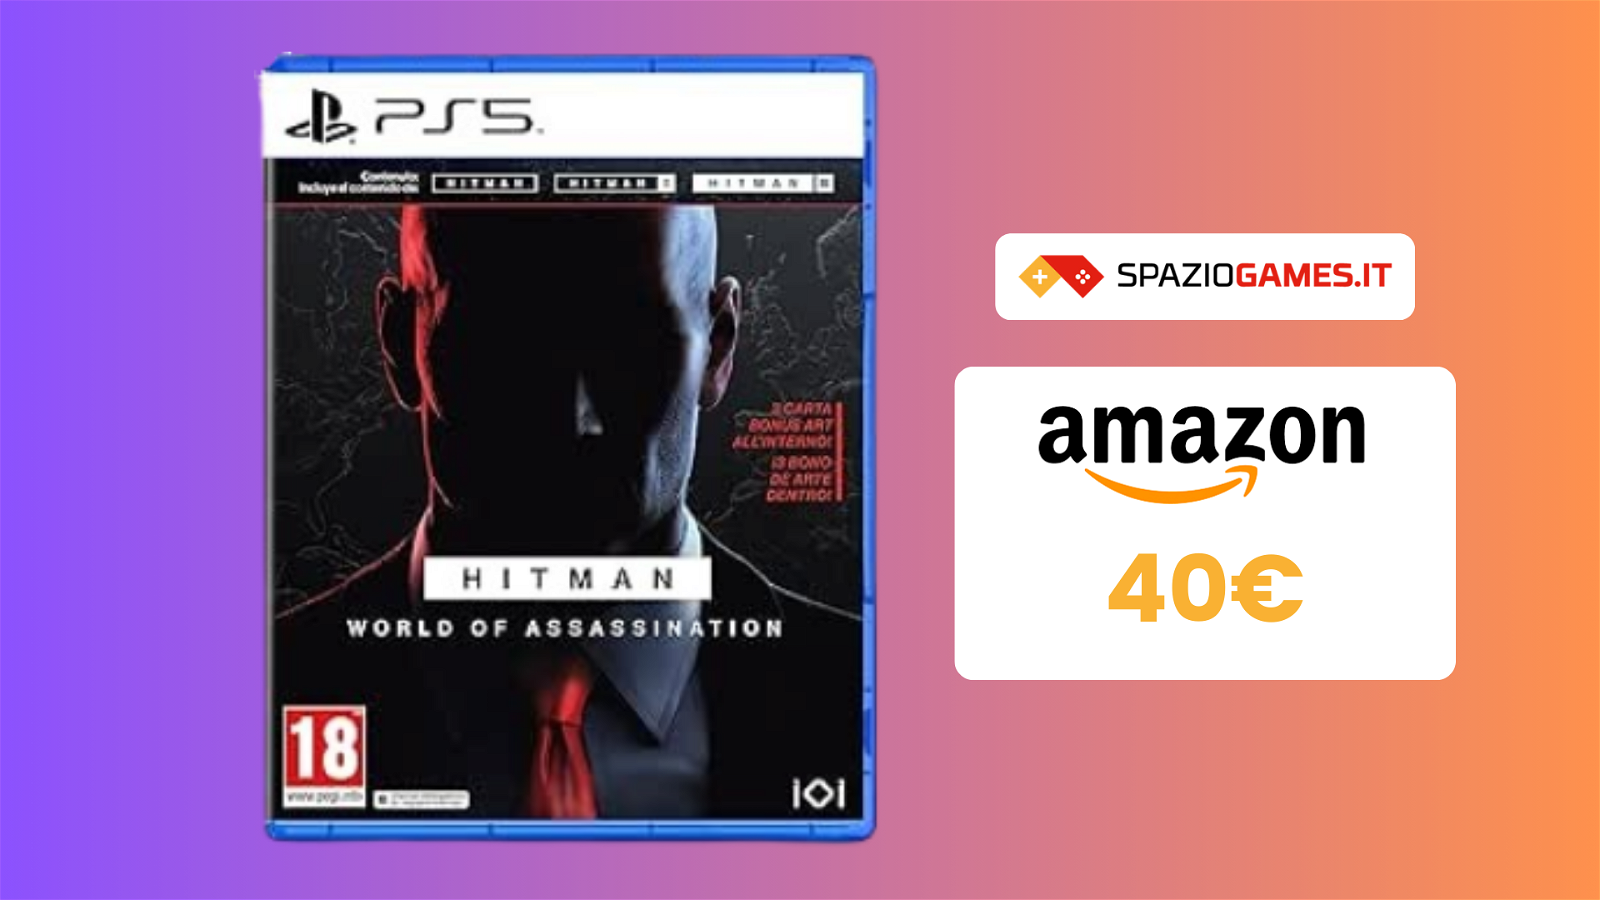 Hitman World of Assassination per PS5: prezzo TOP a 40€!